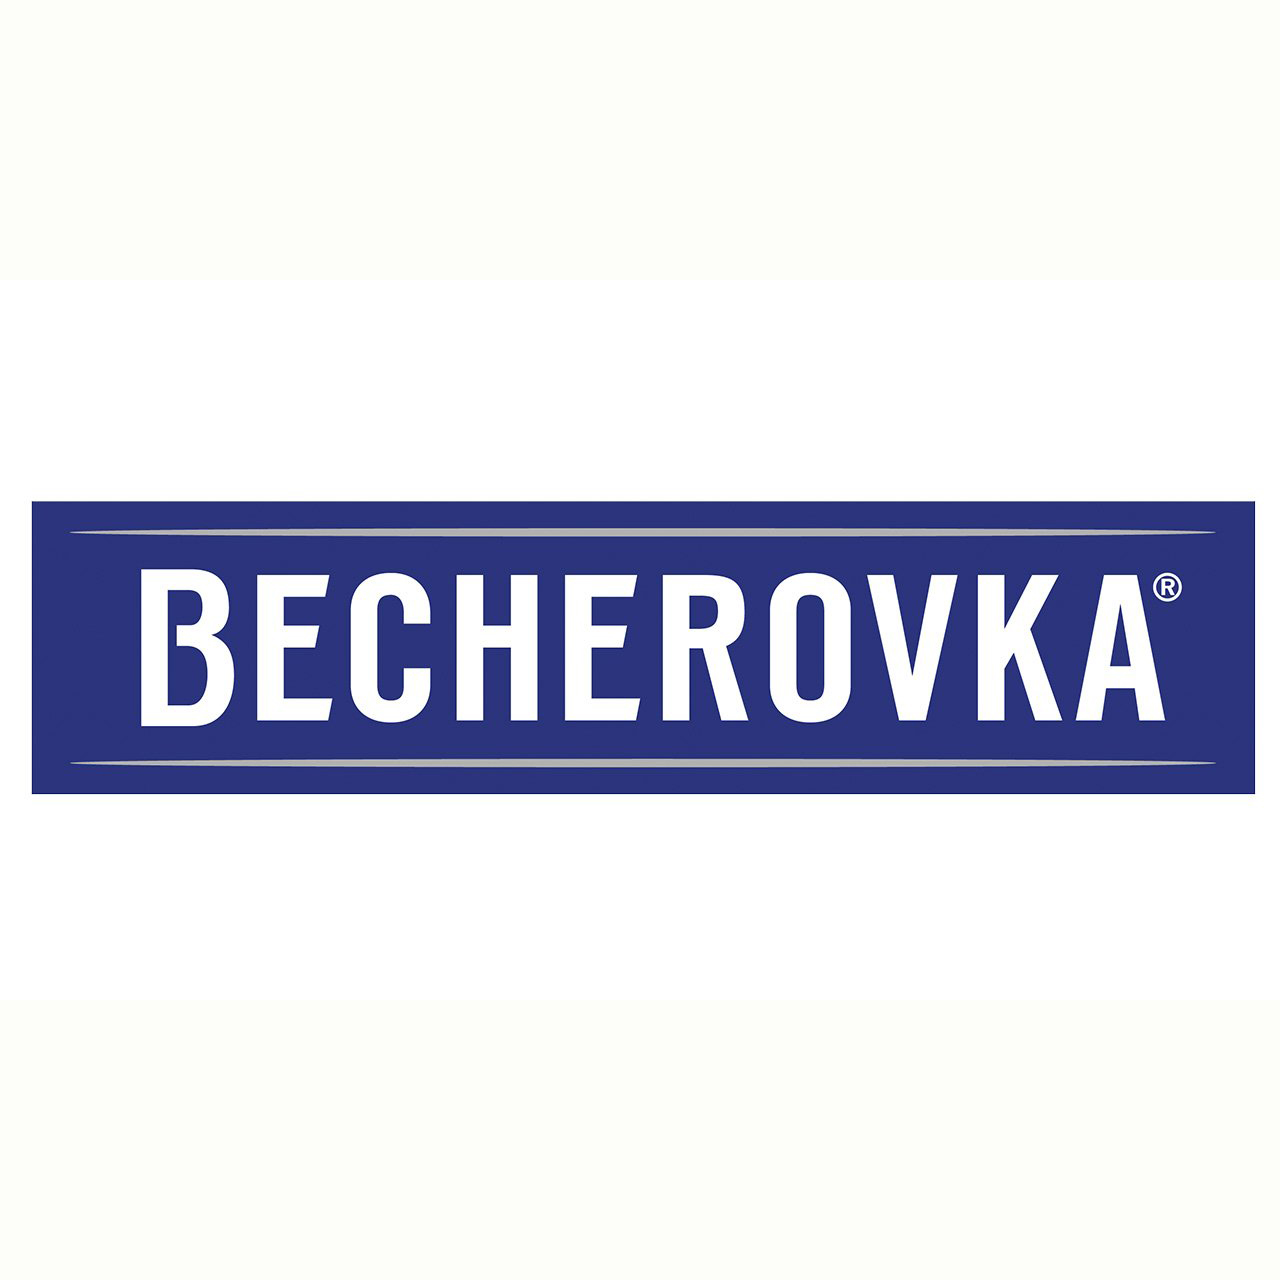 Ликерная настойка на травах Becherovka Lemond 1л 20% в Украине